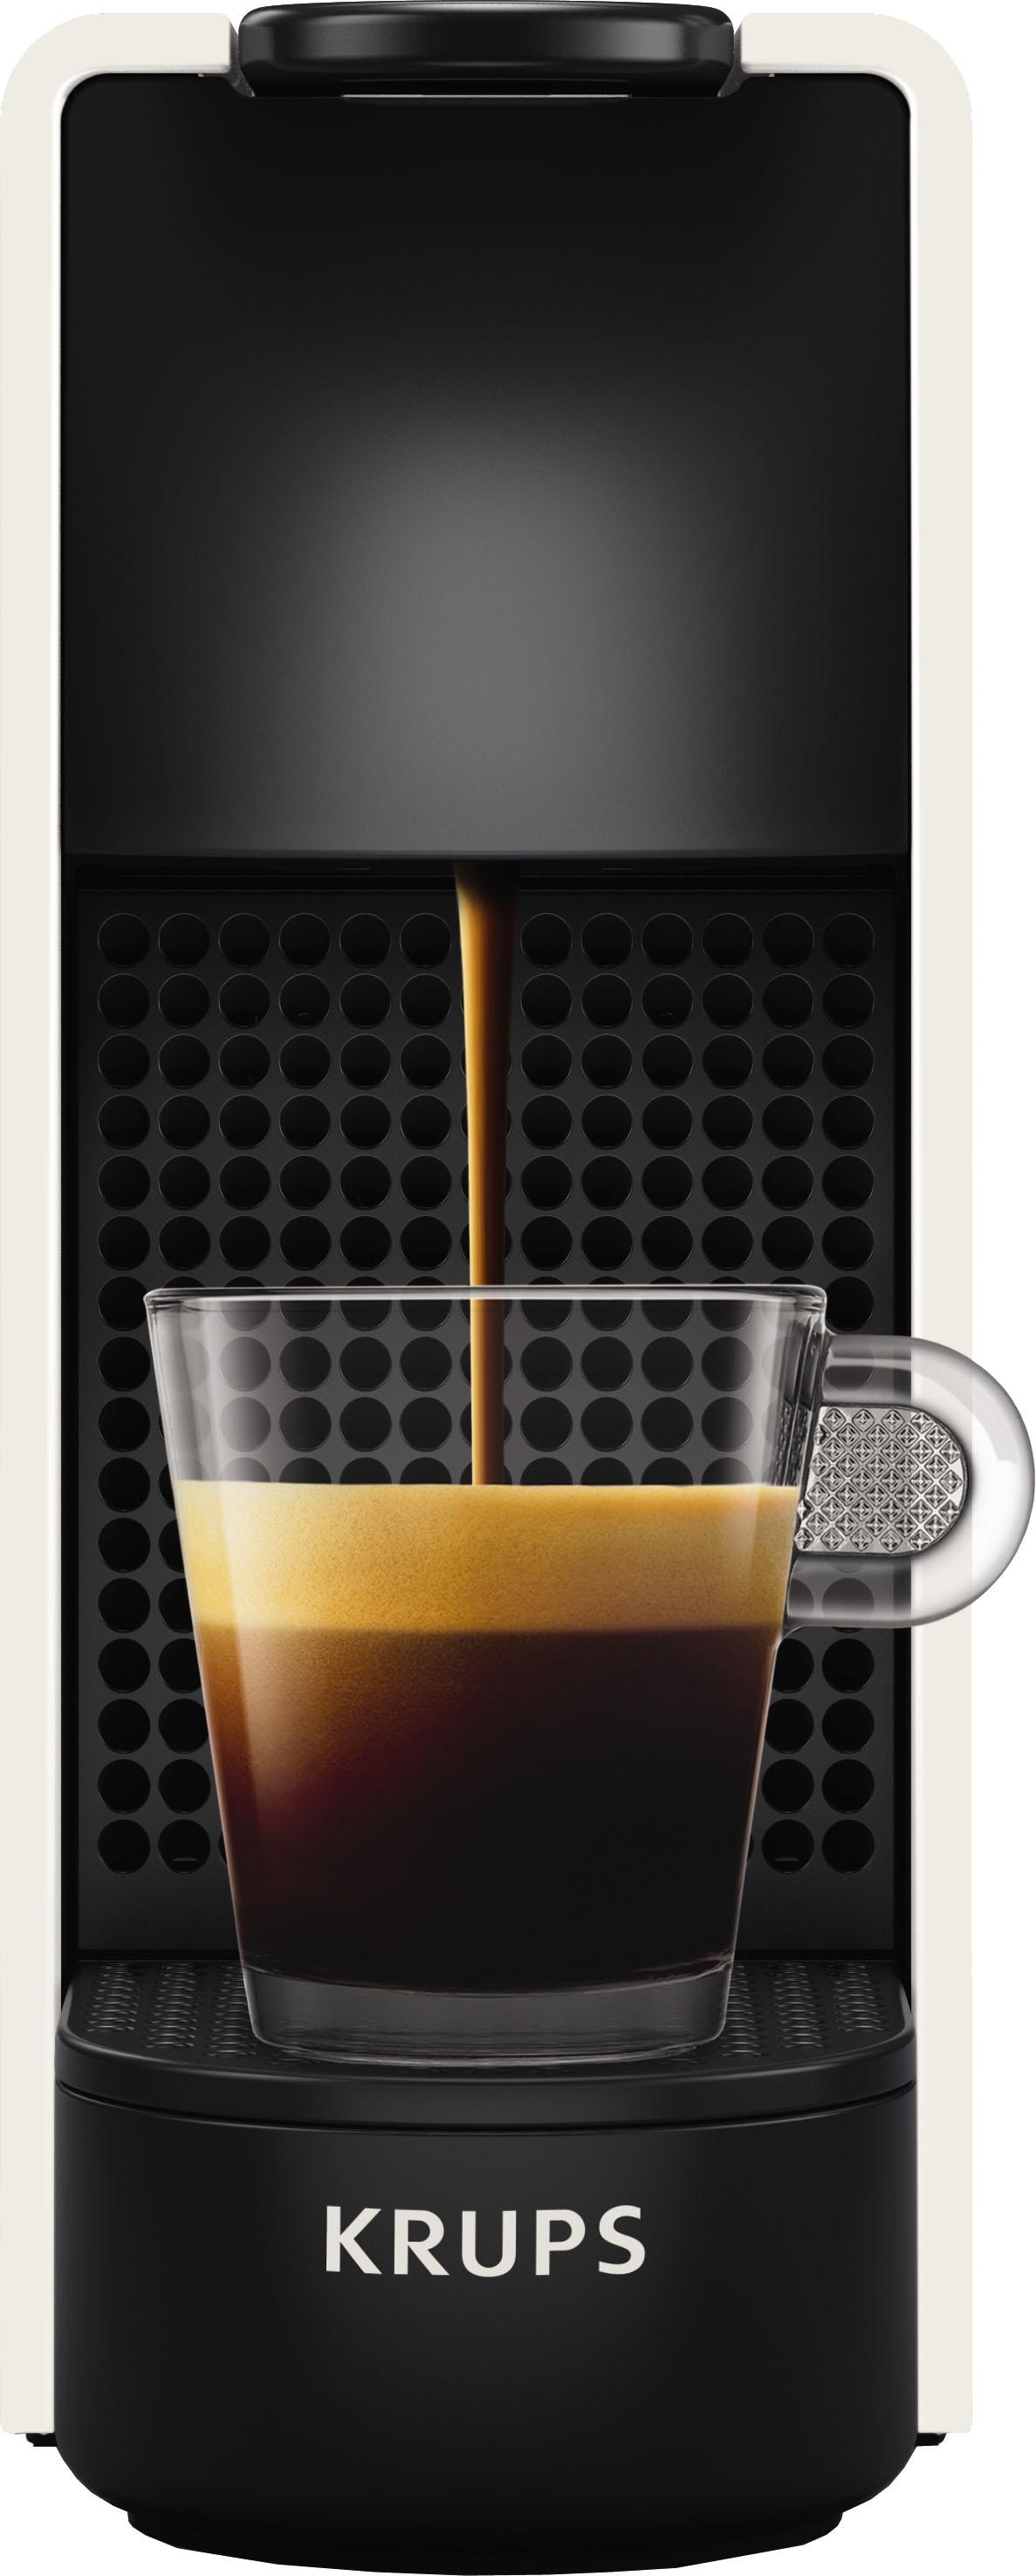 Nespresso Kapselmaschine »Essenza 3 inkl. von XN1111 Garantie Jahren Milchaufschäumer, Aeroccino 14 Kapseln XXL Mini mit Willkommenspaket White«, Krups, mit